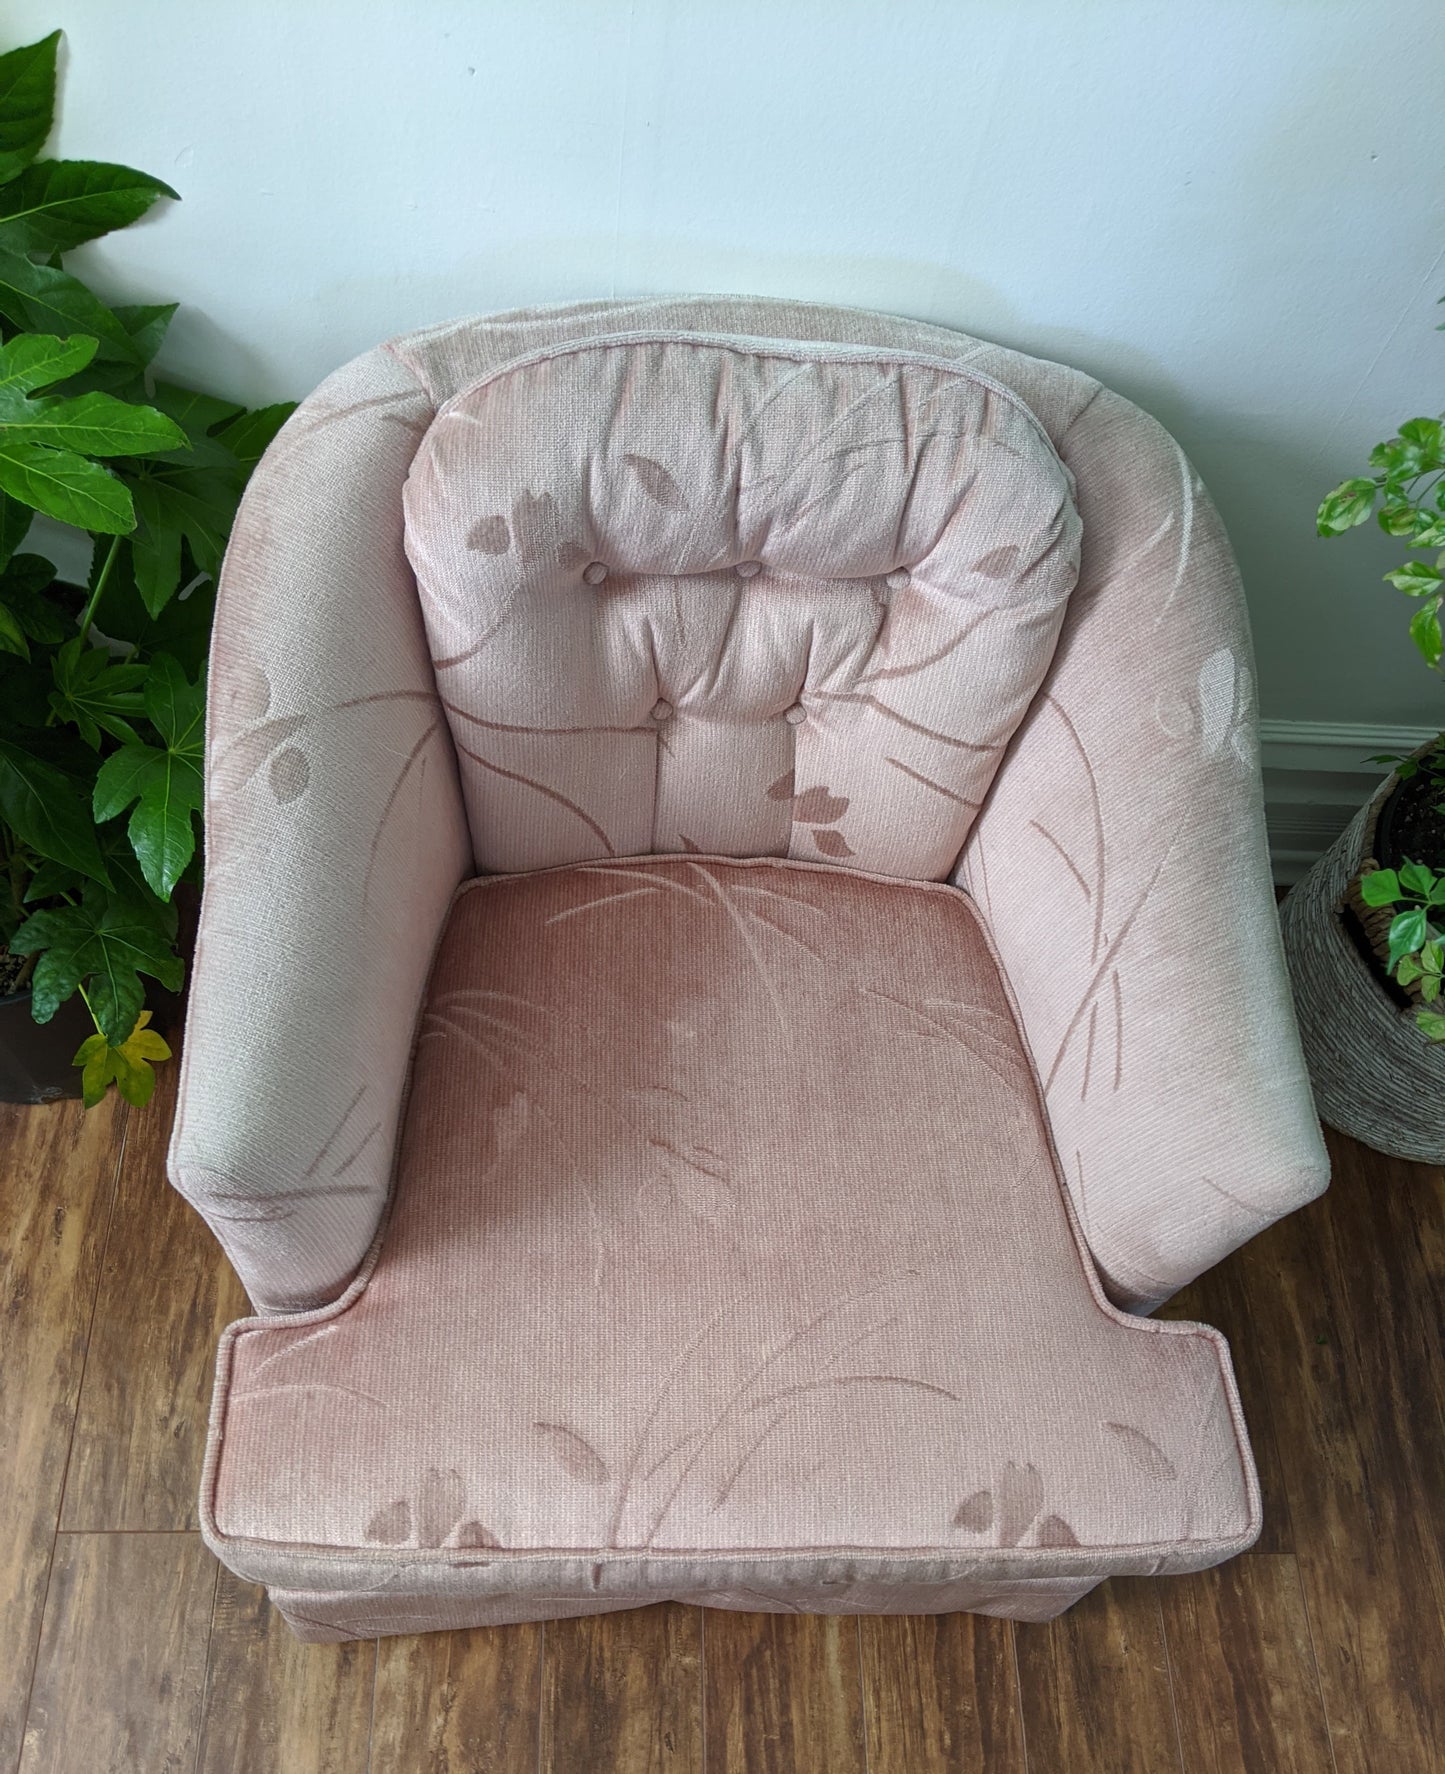 The Boudoir Chair